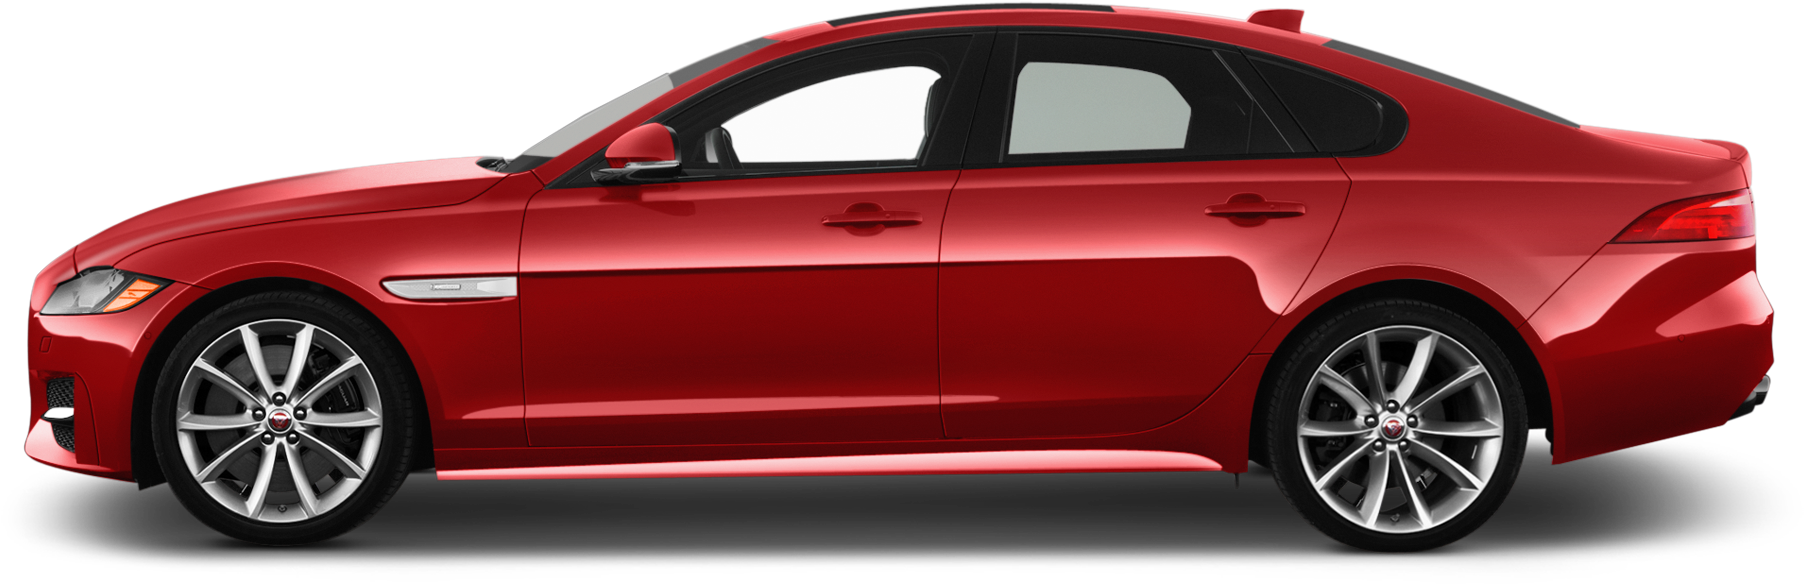 Jaguar Transparent Side View - 2016 Jaguar Xf Side Clipart (2048x1360), Png Download